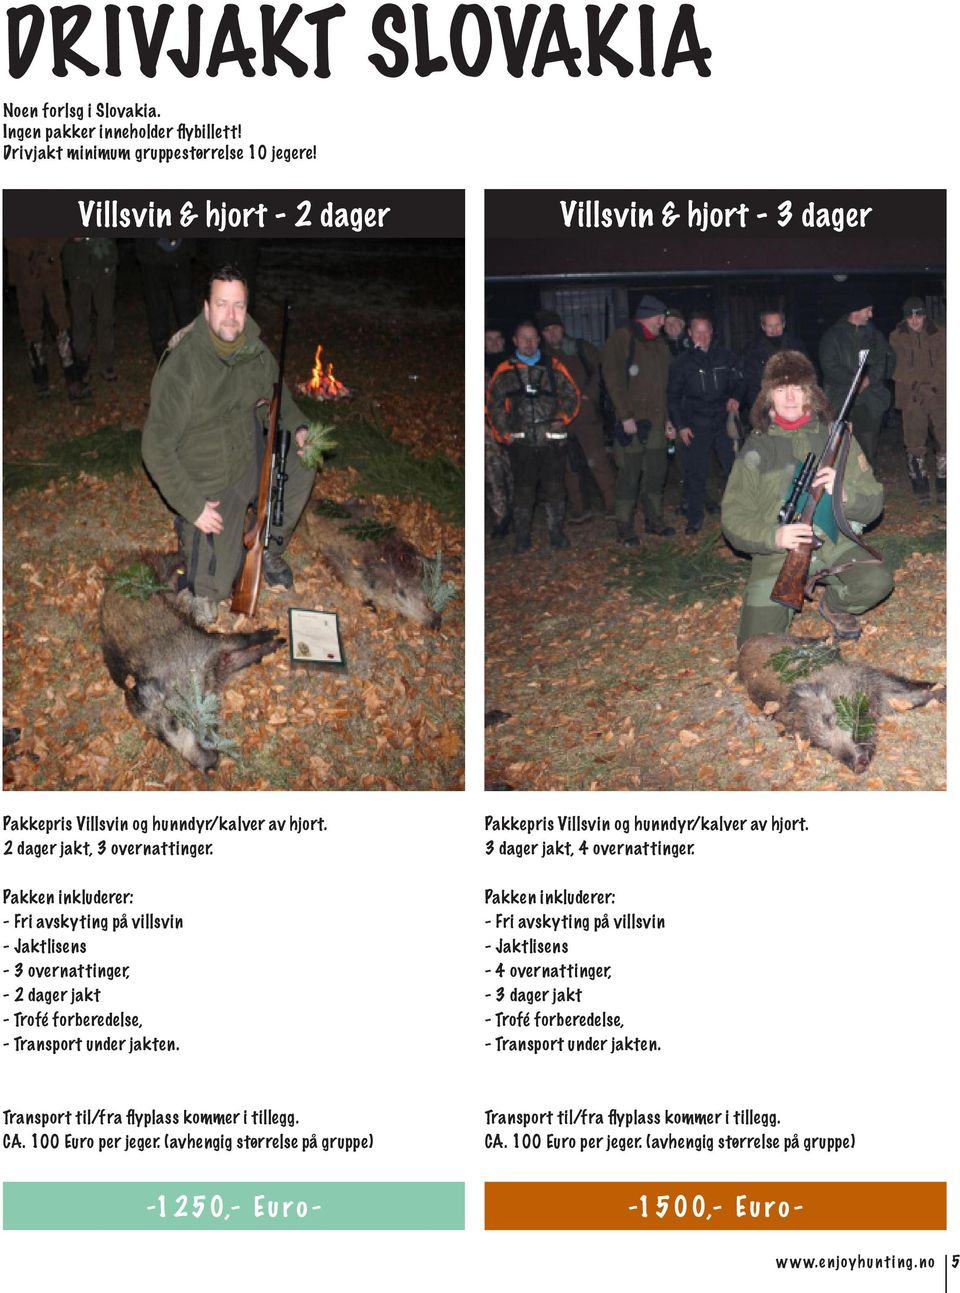 Pakken inkluderer: - Fri avskyting på villsvin - Jaktlisens - 3 overnattinger, - 2 dager jakt - Trofé forberedelse, - Transport under jakten. Pakkepris Villsvin og hunndyr/kalver av hjort.